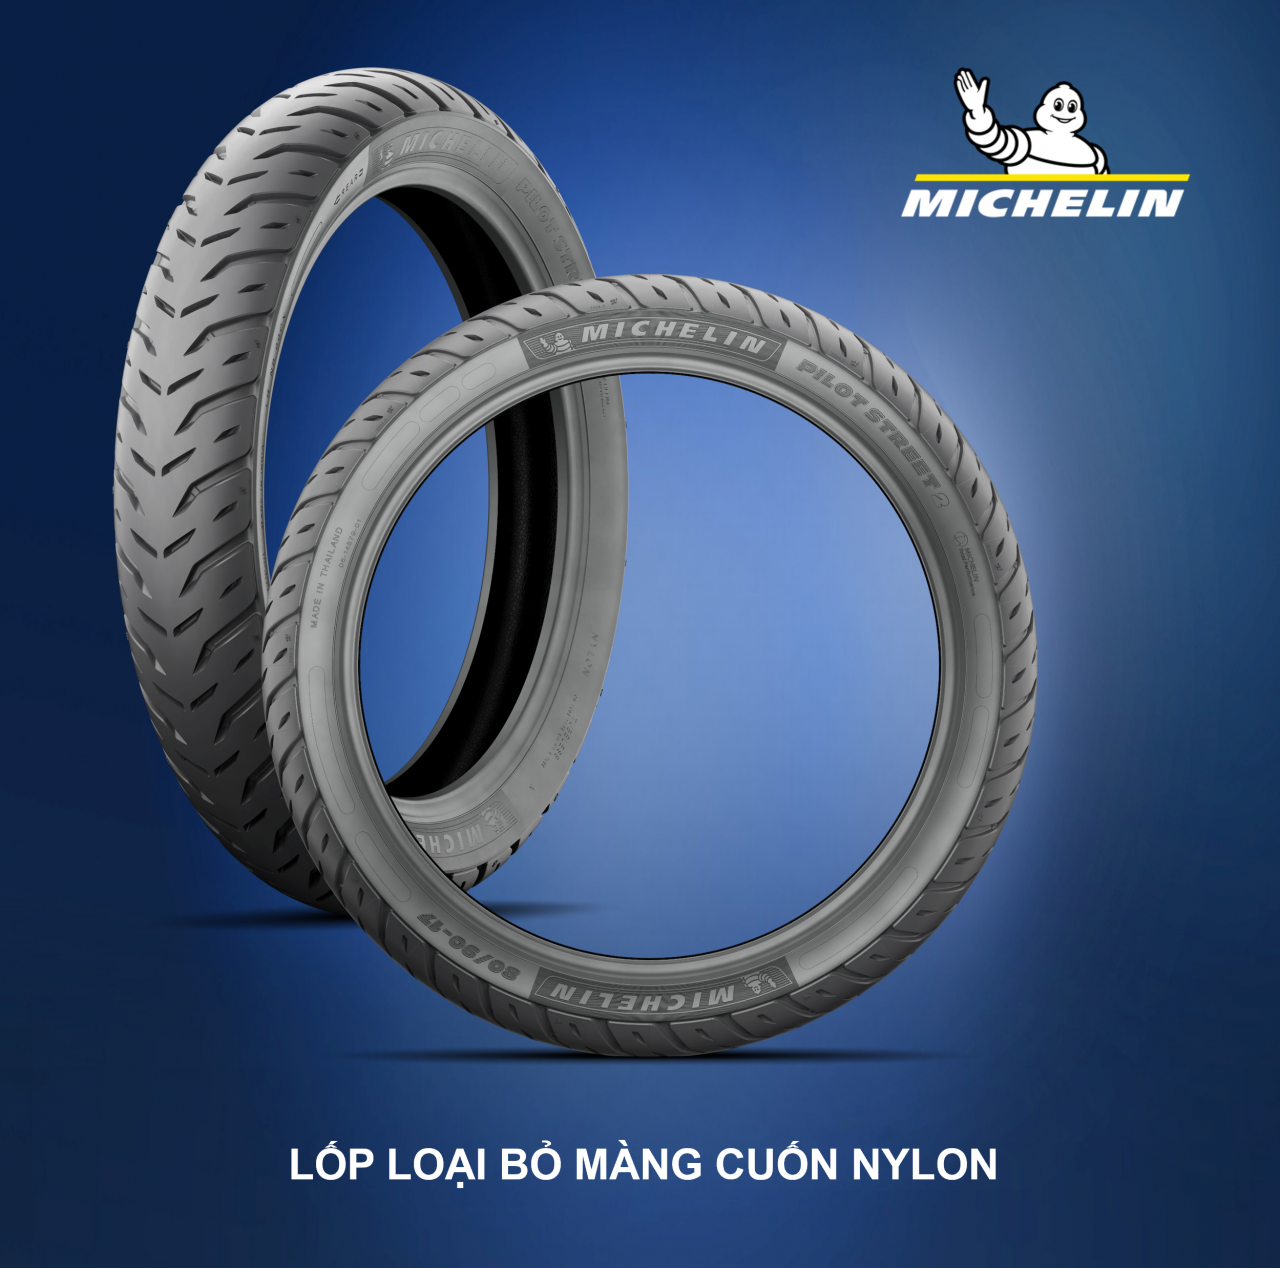 Michelin loại bỏ cuốn nylon trên lốp xe máy để bao vệ môi trường